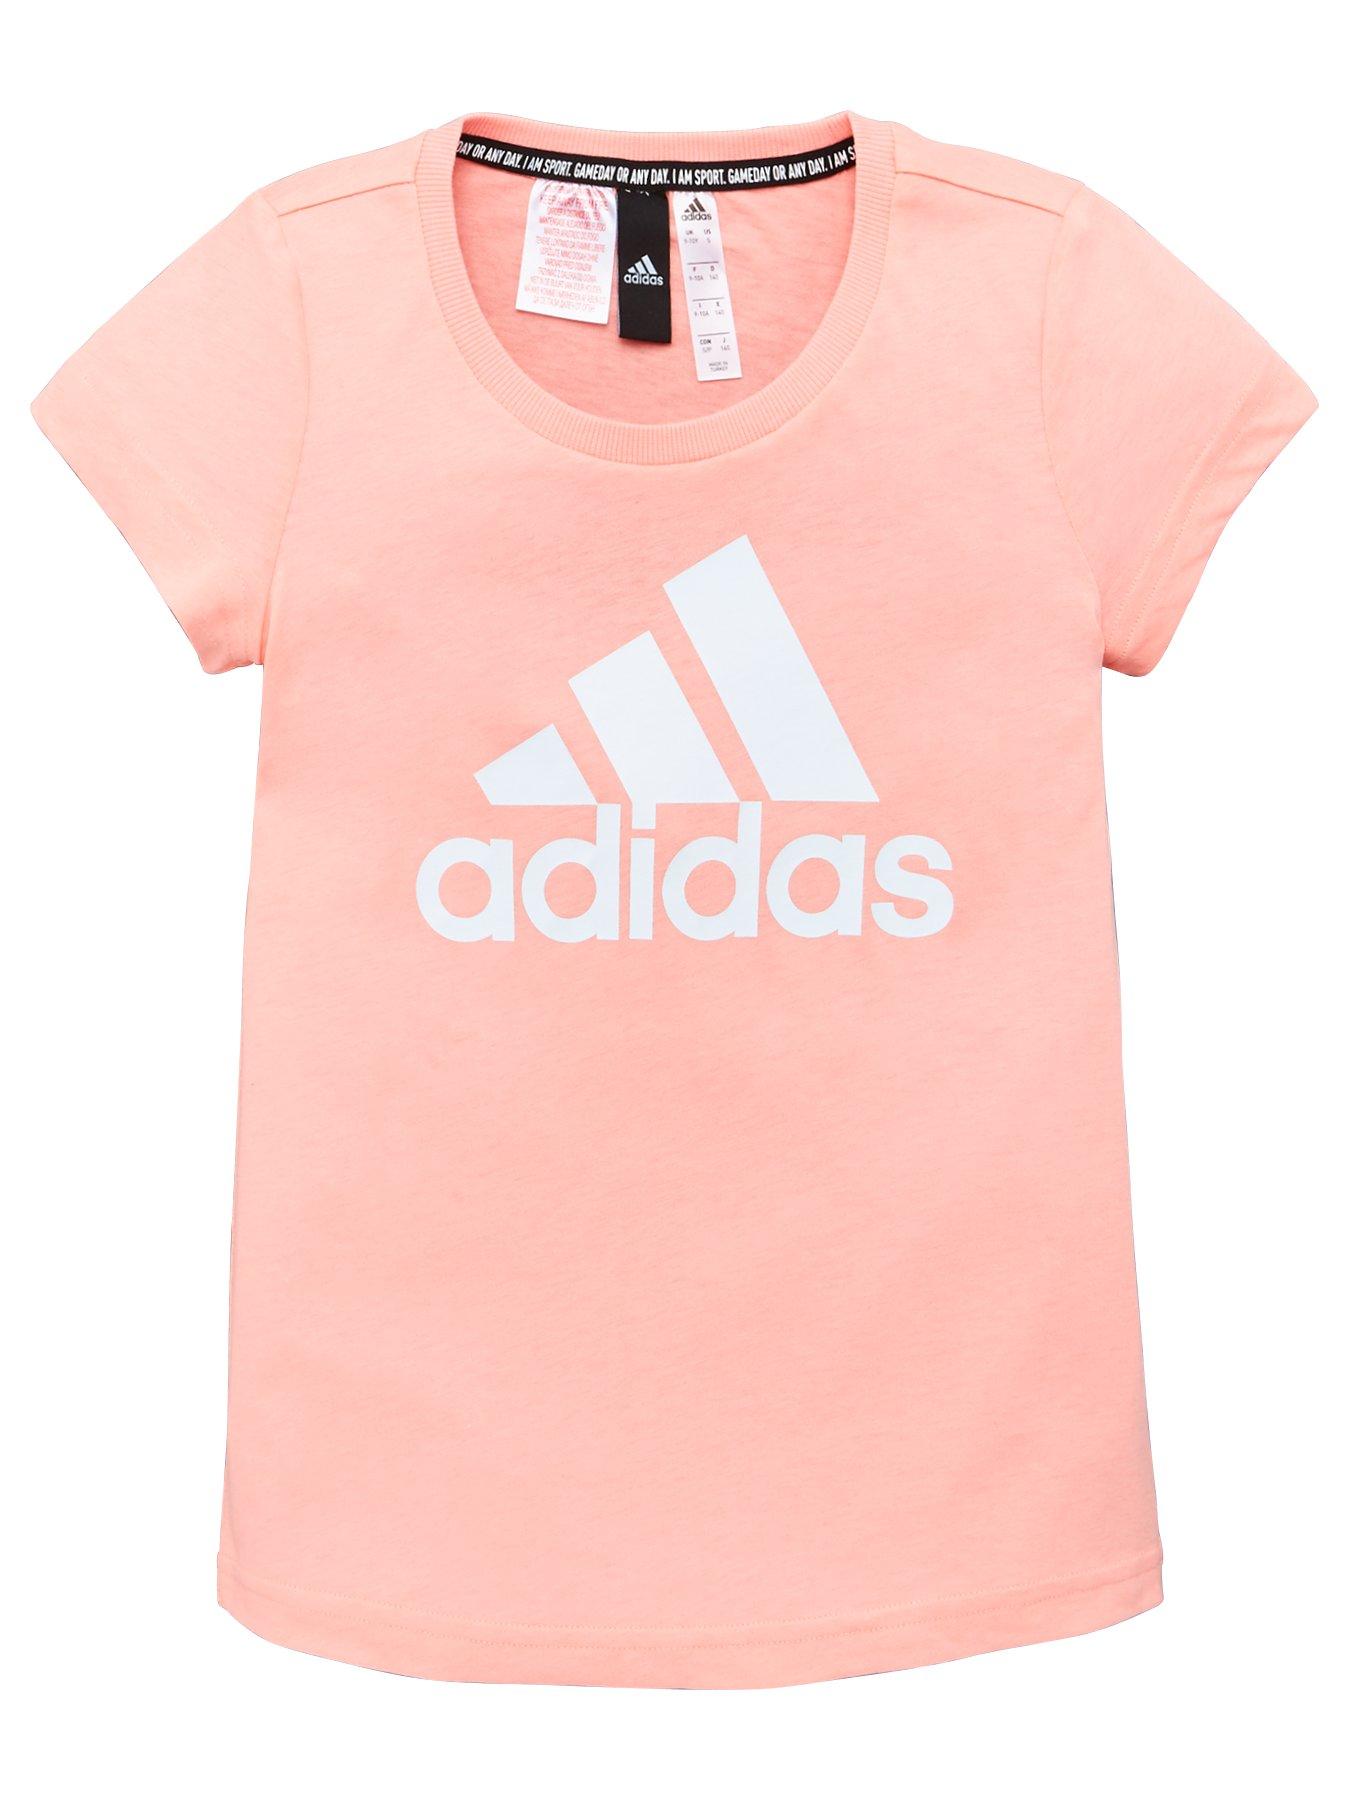 girls pink adidas shirt